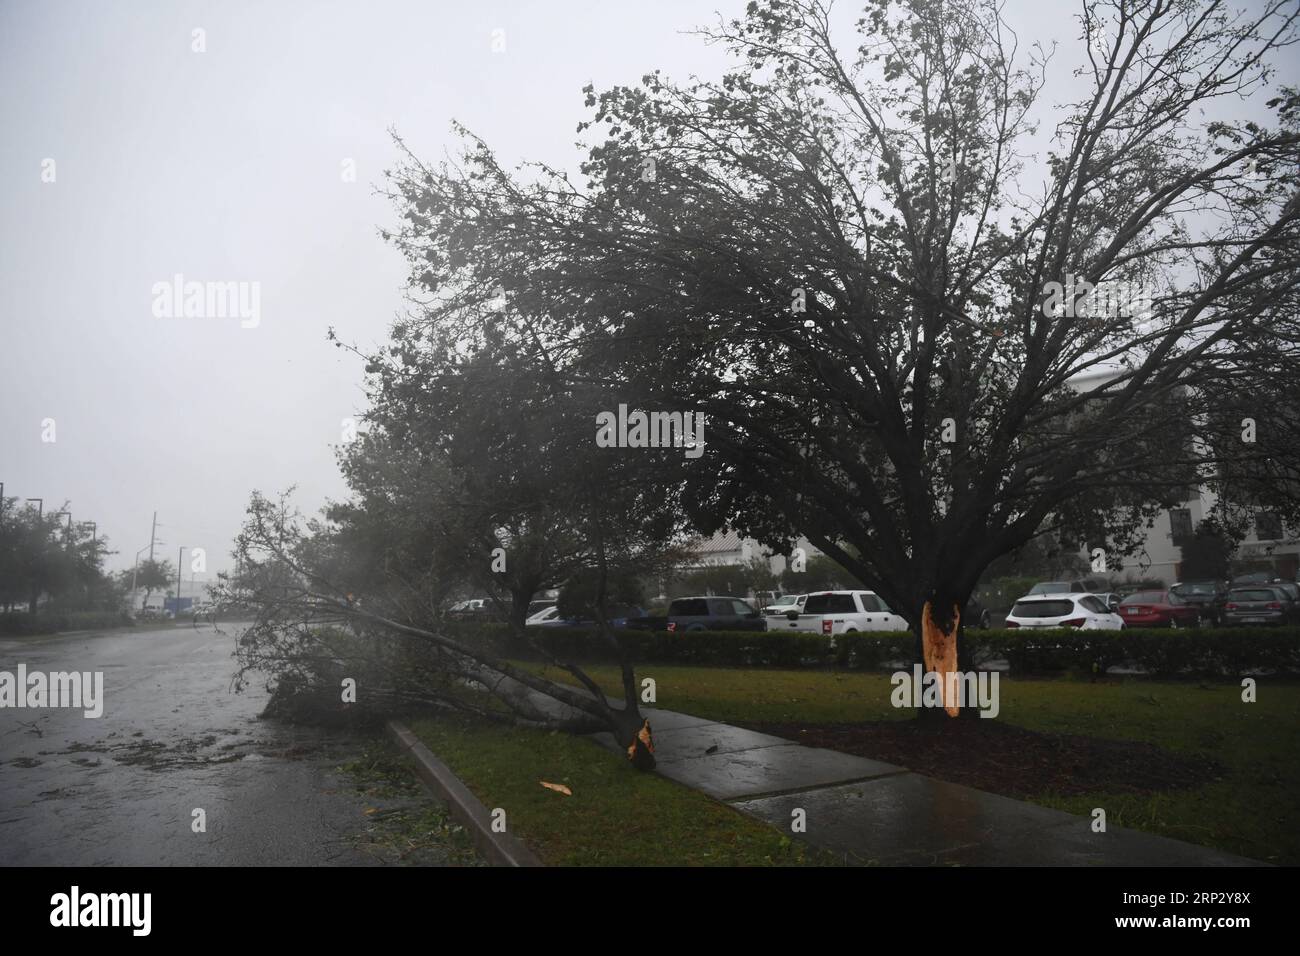 (180914) -- WILMINGTON, 14. September 2018 -- Ein Baum wird bei starkem Sturm gebrochen, als Hurrikan Florence am 14. September 2018 in Wilmington, North Carolina, USA, an Land kommt. Der Hurrikan Florence am Freitagmorgen landete an der Küste von North Carolina als Sturm der Kategorie 1, mit Stürmen und Regenfällen. (lrz) U.S.-WILMINGTON-HURRICANE FLORENCE LiuxJie PUBLICATIONxNOTxINxCHN Stockfoto